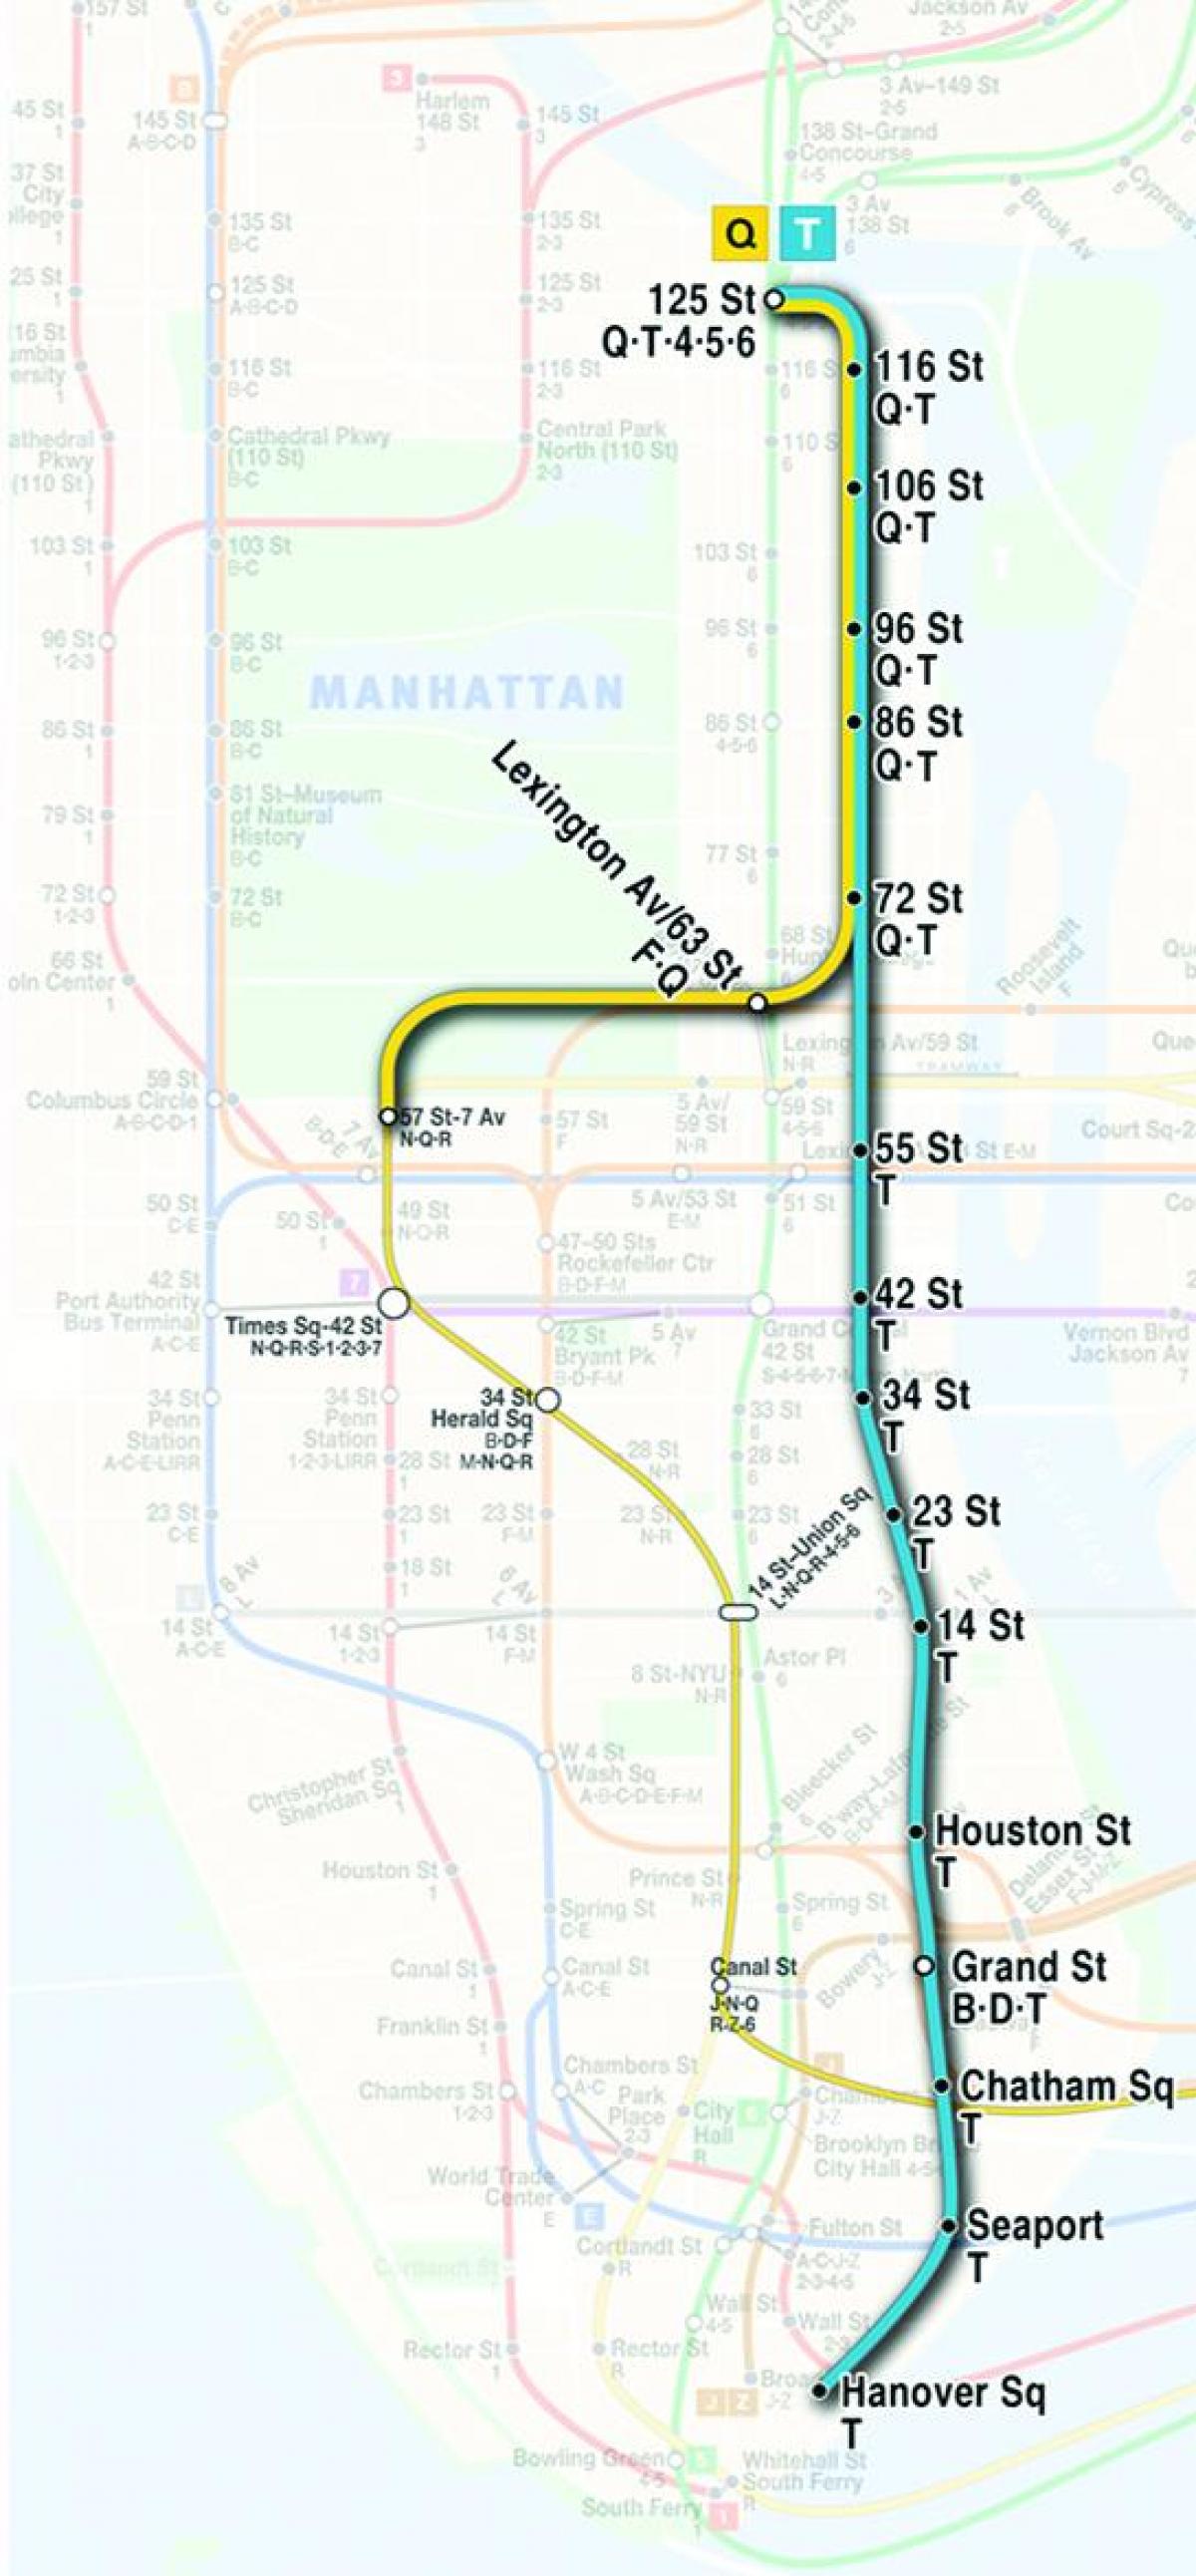 mappa di second avenue subway